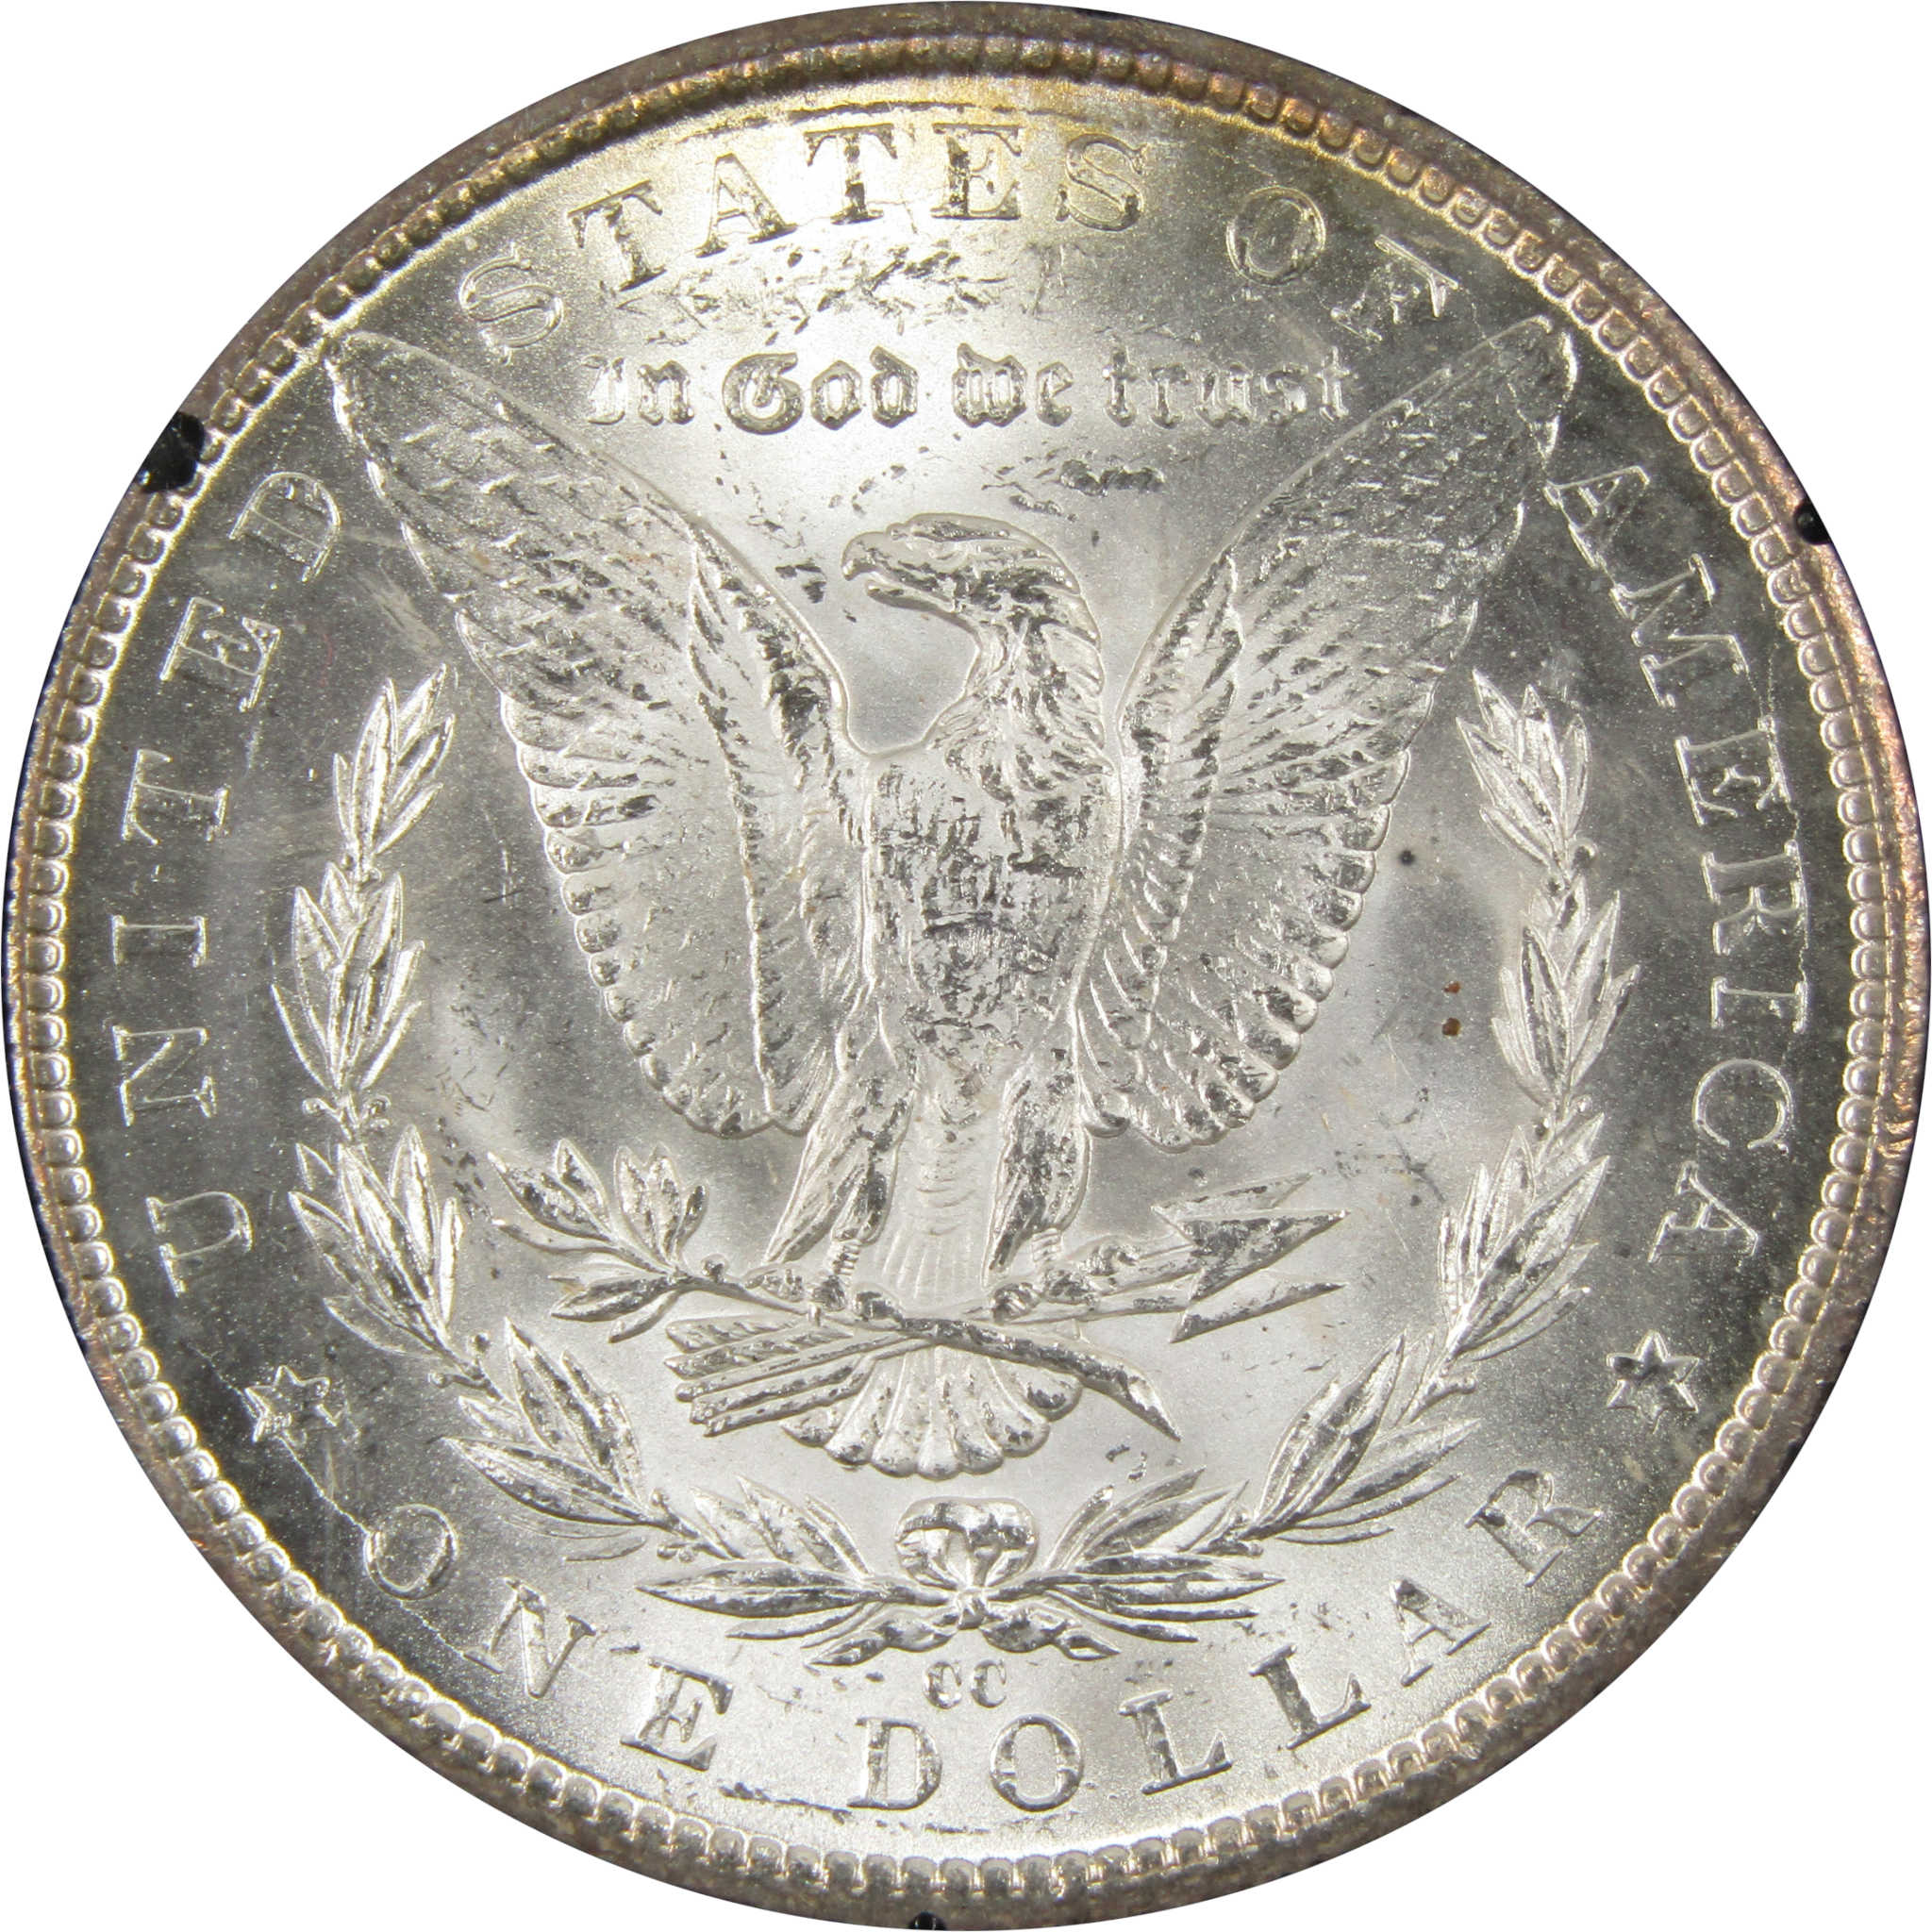 1884 CC GSA Morgan Dollar BU Uncirculated Silver $1 Coin SKU:I9299 - Morgan coin - Morgan silver dollar - Morgan silver dollar for sale - Profile Coins &amp; Collectibles